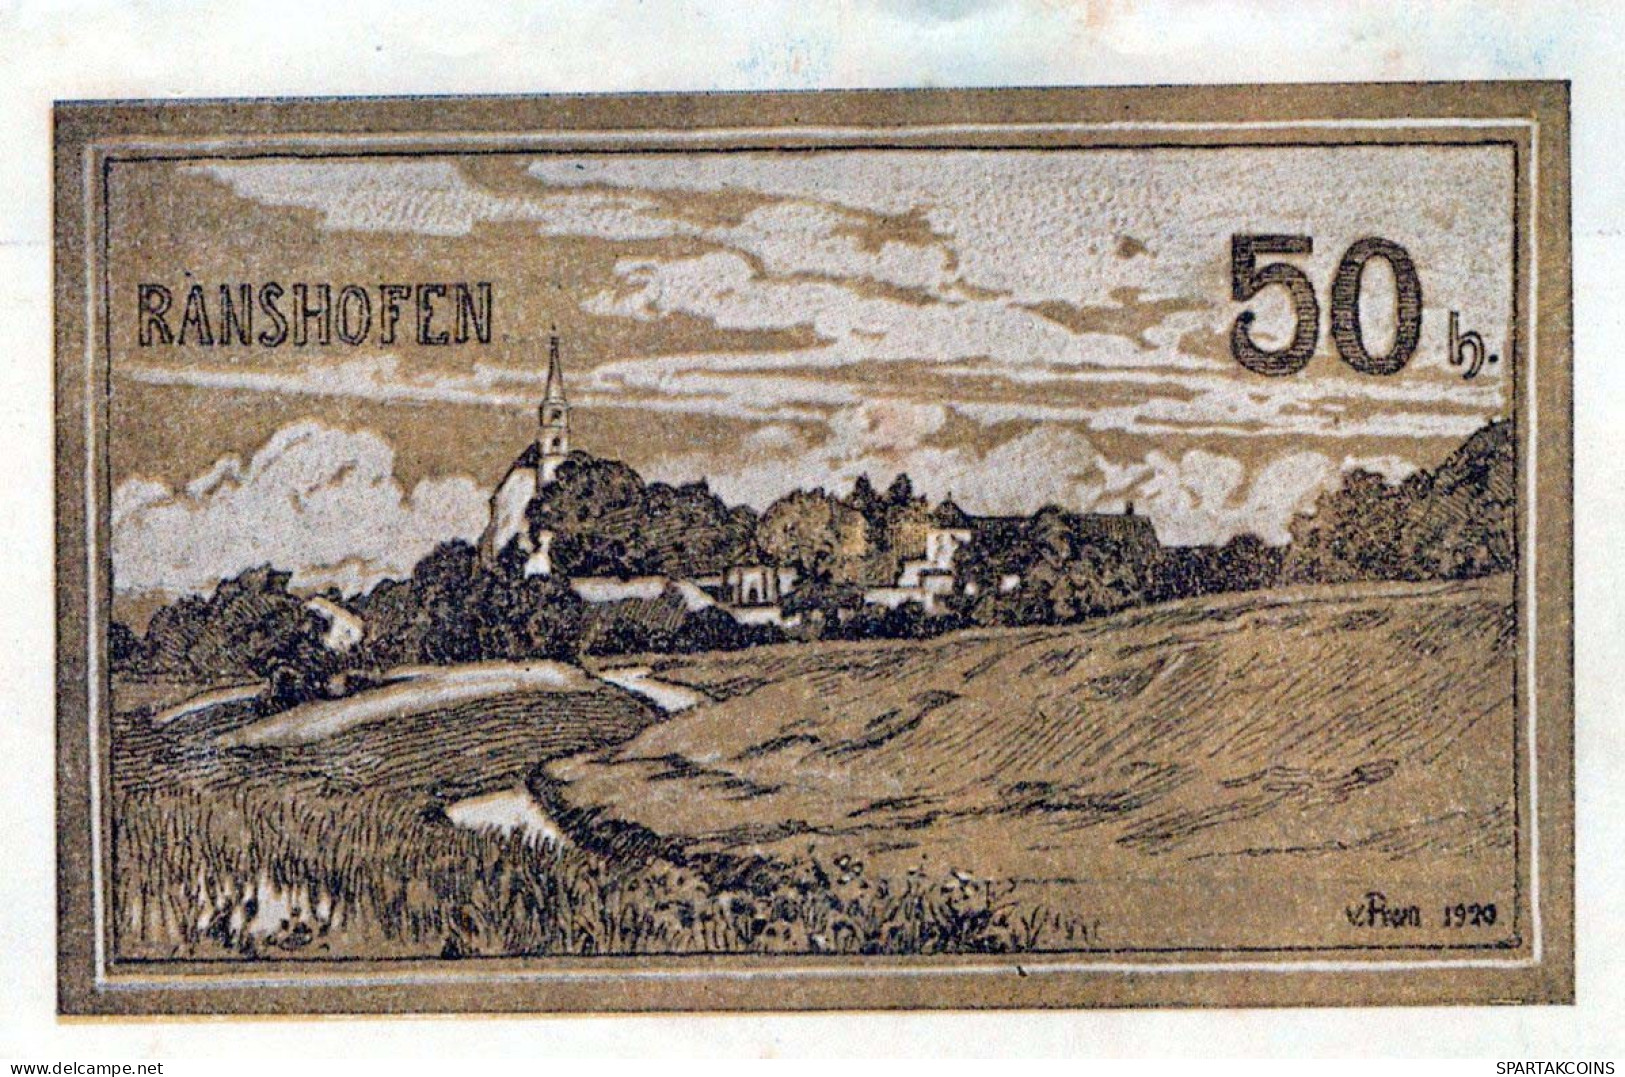 50 HELLER 1920 Stadt RANSHOFEN Oberösterreich Österreich Notgeld Banknote #PE523 - [11] Local Banknote Issues